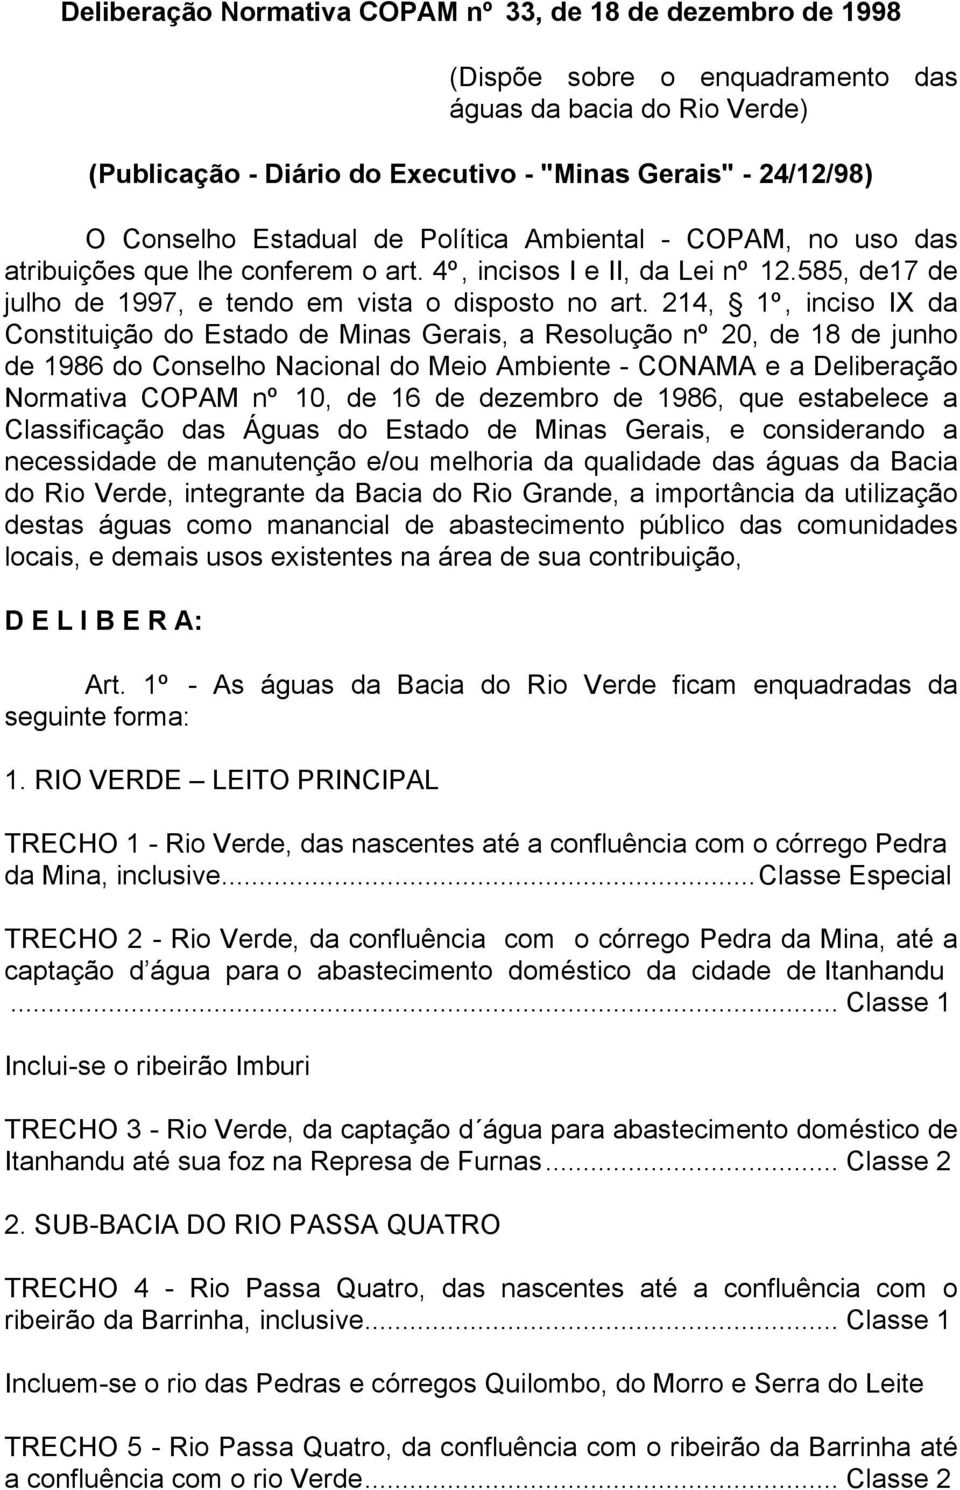 214, 1º, inciso IX da Constituição do Estado de Minas Gerais, a Resolução nº 20, de 18 de junho de 1986 do Conselho Nacional do Meio Ambiente - CONAMA e a Deliberação Normativa COPAM nº 10, de 16 de